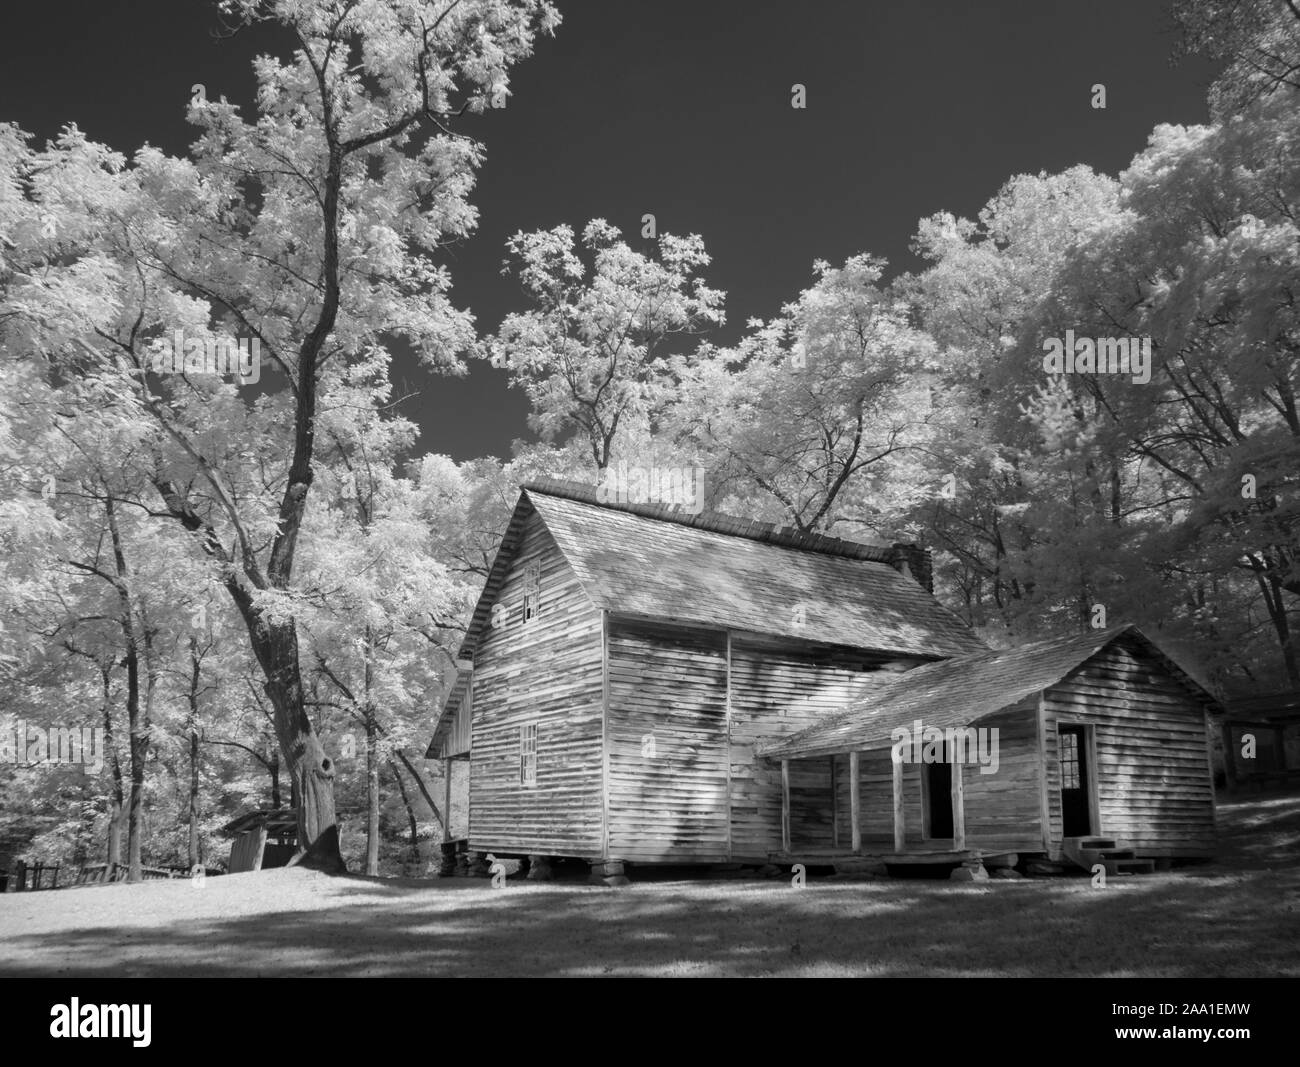 Rouge infrarouge noir fausse photographie n&b de Tipton maison à Cades Cove le Great Smoky Mountains National Park à New York Banque D'Images